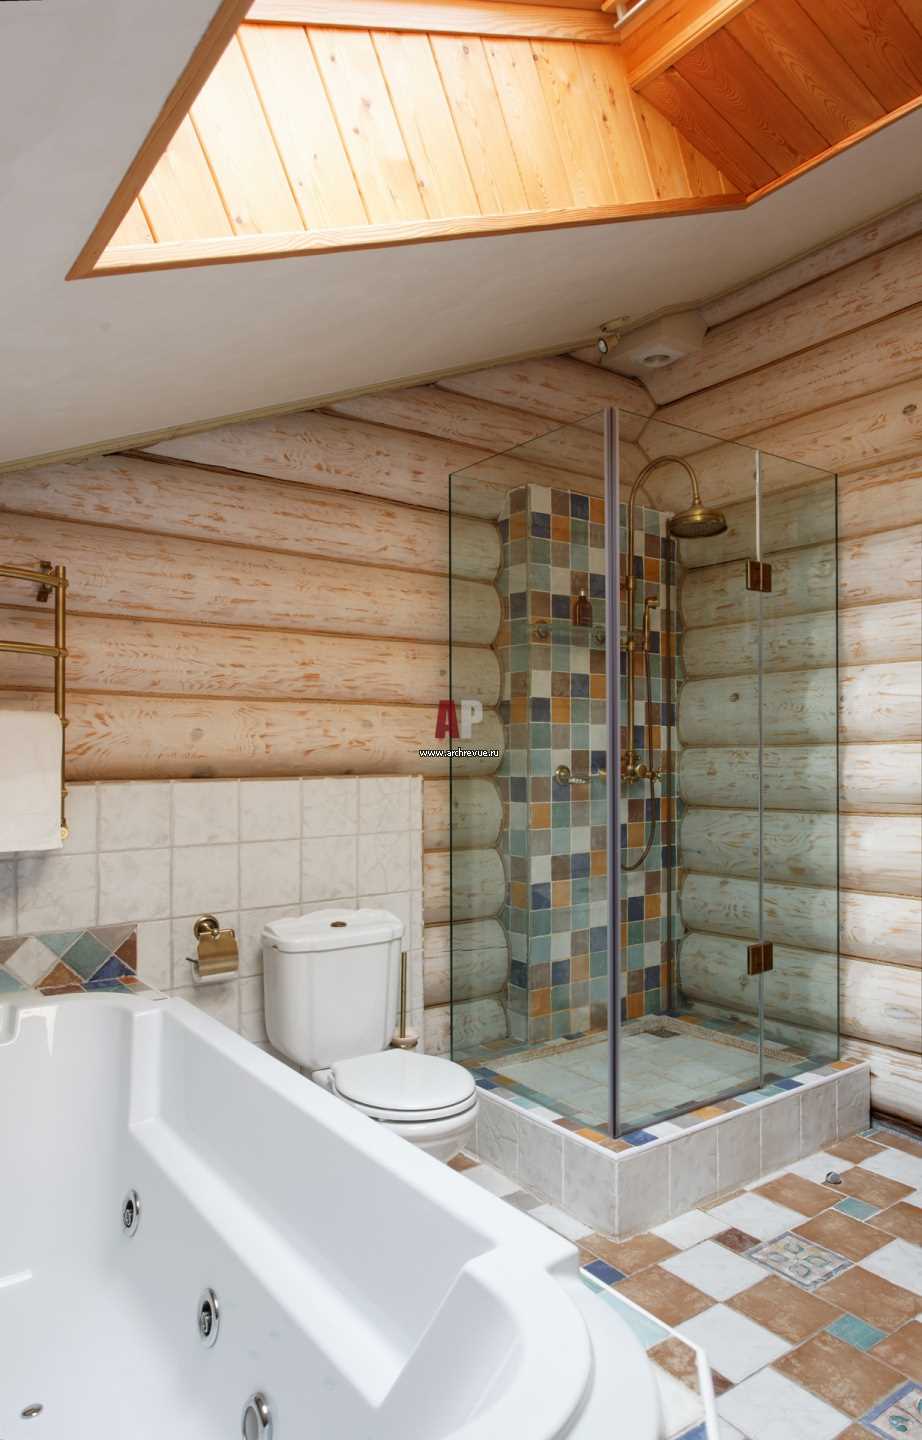 idée d'un style insolite d'une salle de bain dans une maison en bois